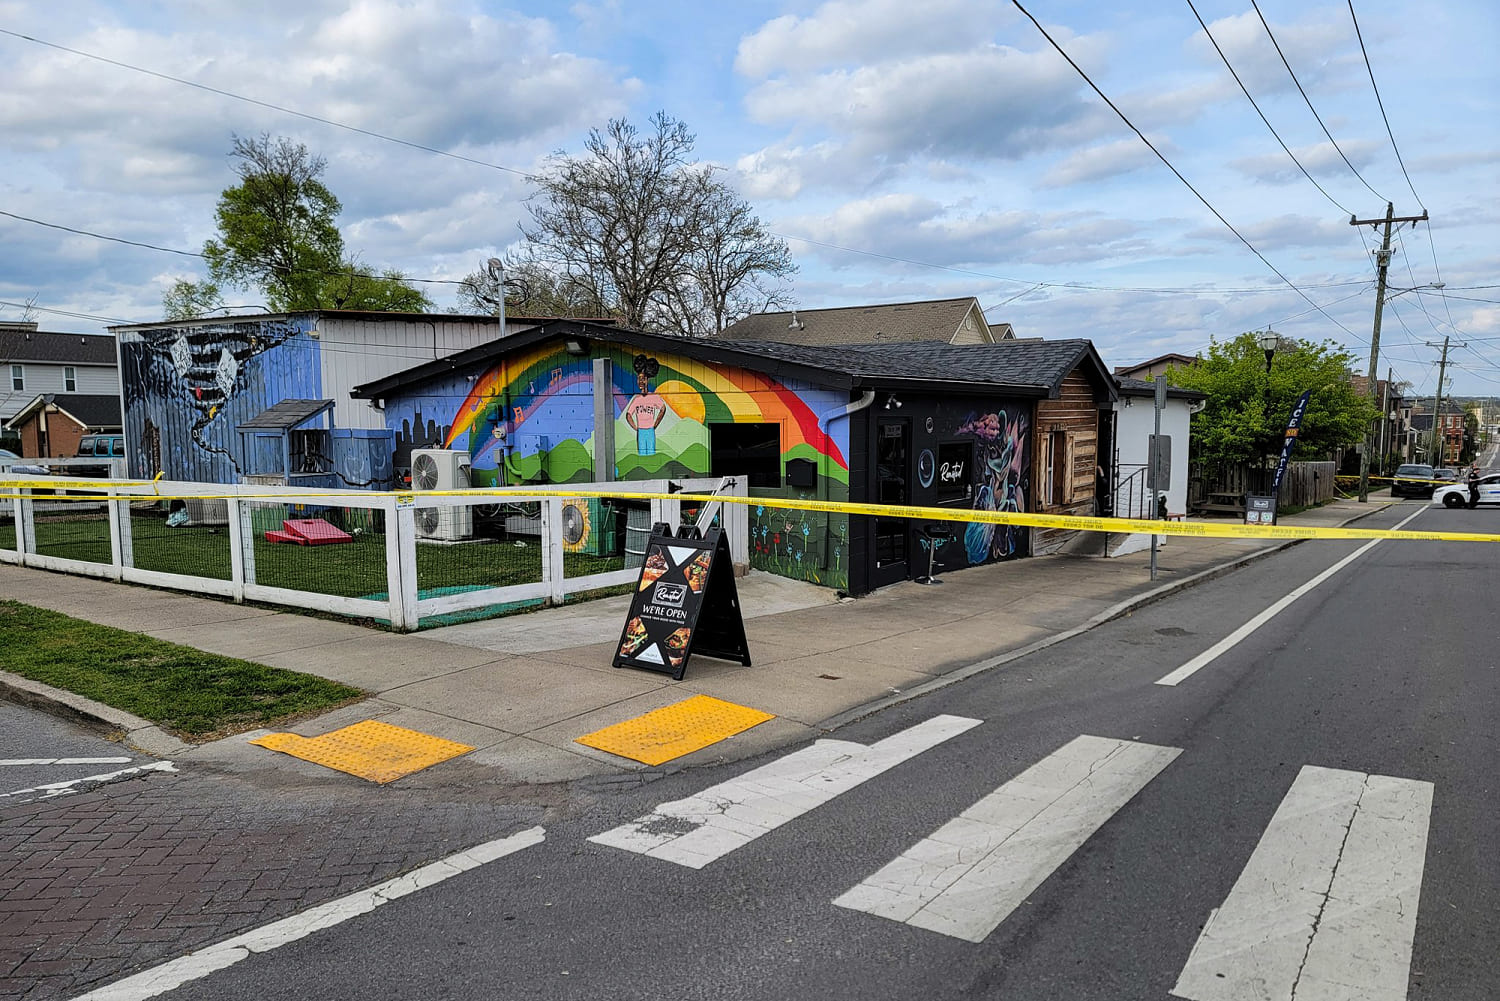 Easter brunch shooting leaves 1 dead and several injured in Nashville; gunman at large